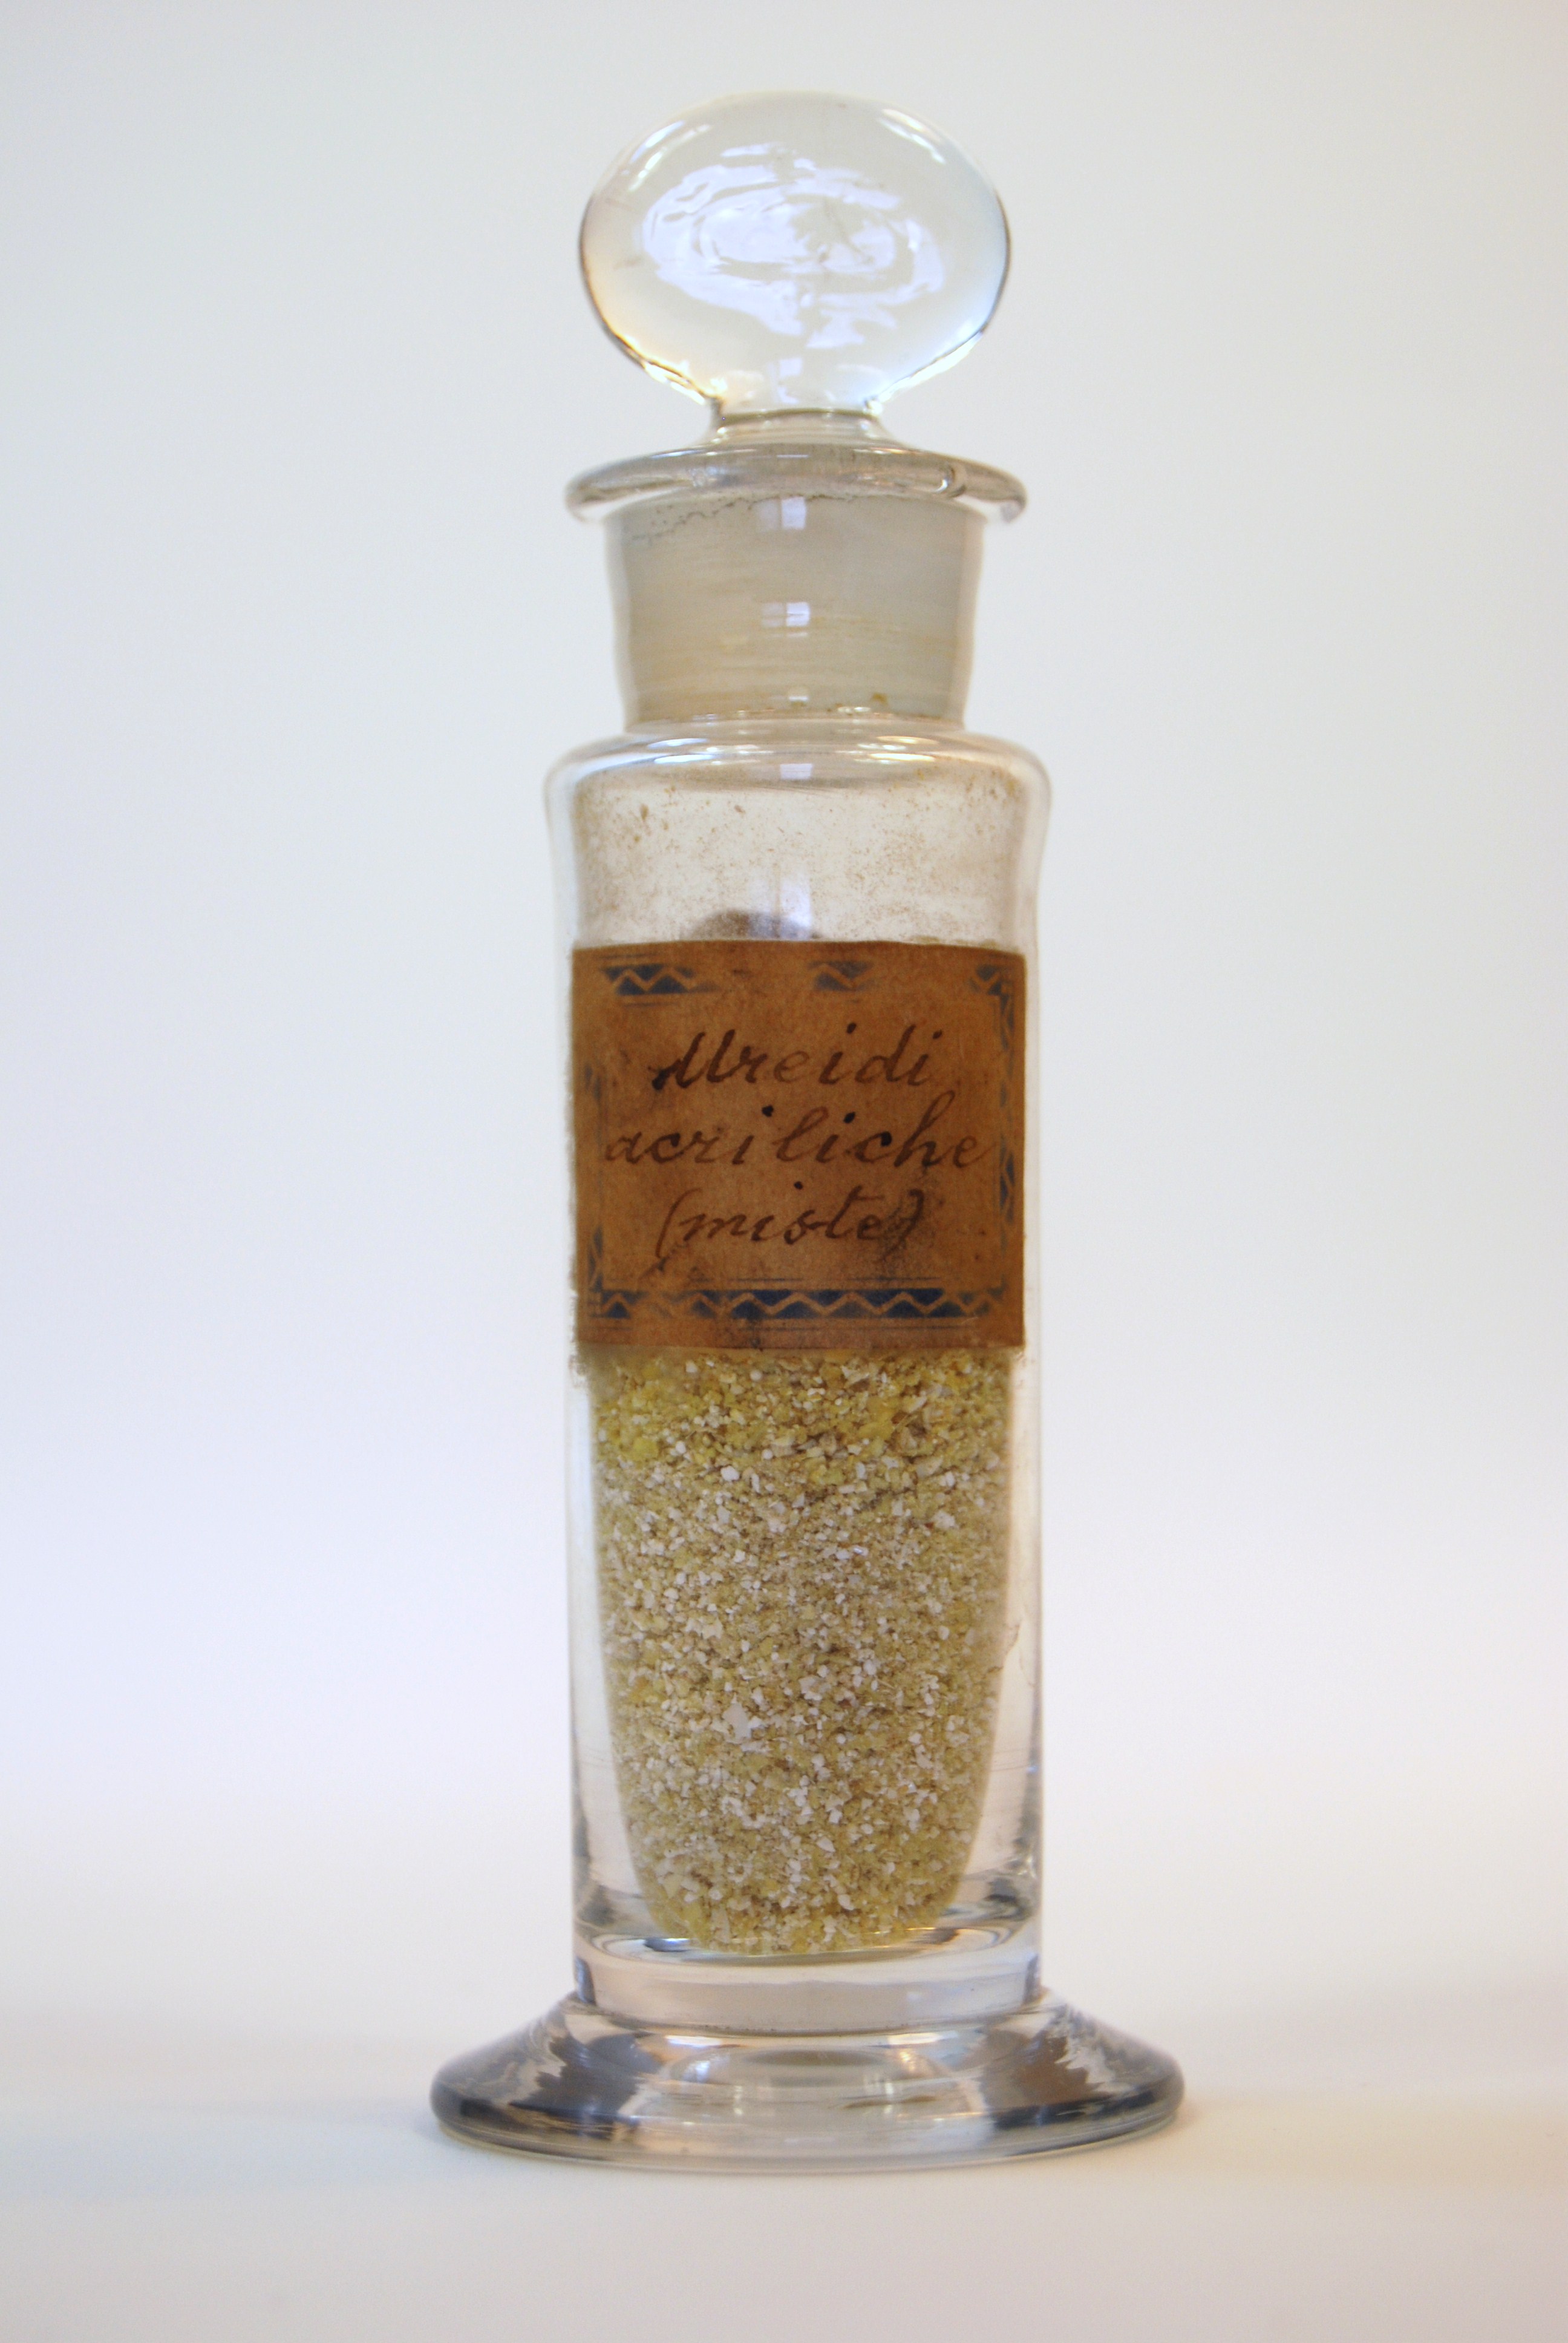 ureidi acriliche (miste) (prodotto chimico, di sintesi) di Ugo Schiff (laboratorio) - scuola chimica fiorentina (metà/ inizio XIX/ XX)